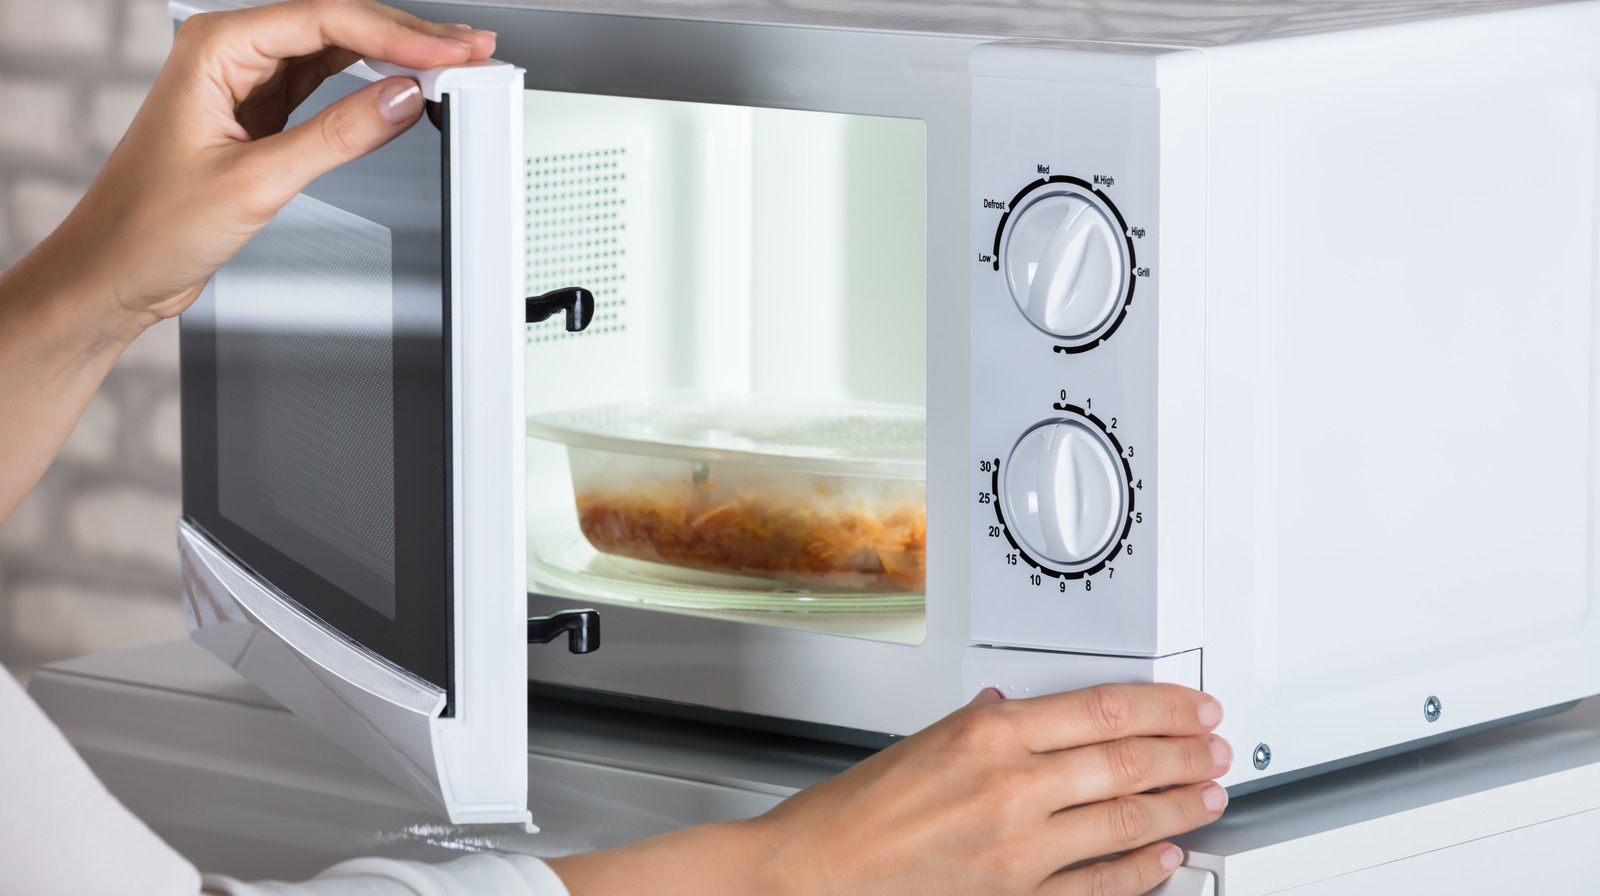 Top 5 Best 700 Watt Microwaves Reviews 